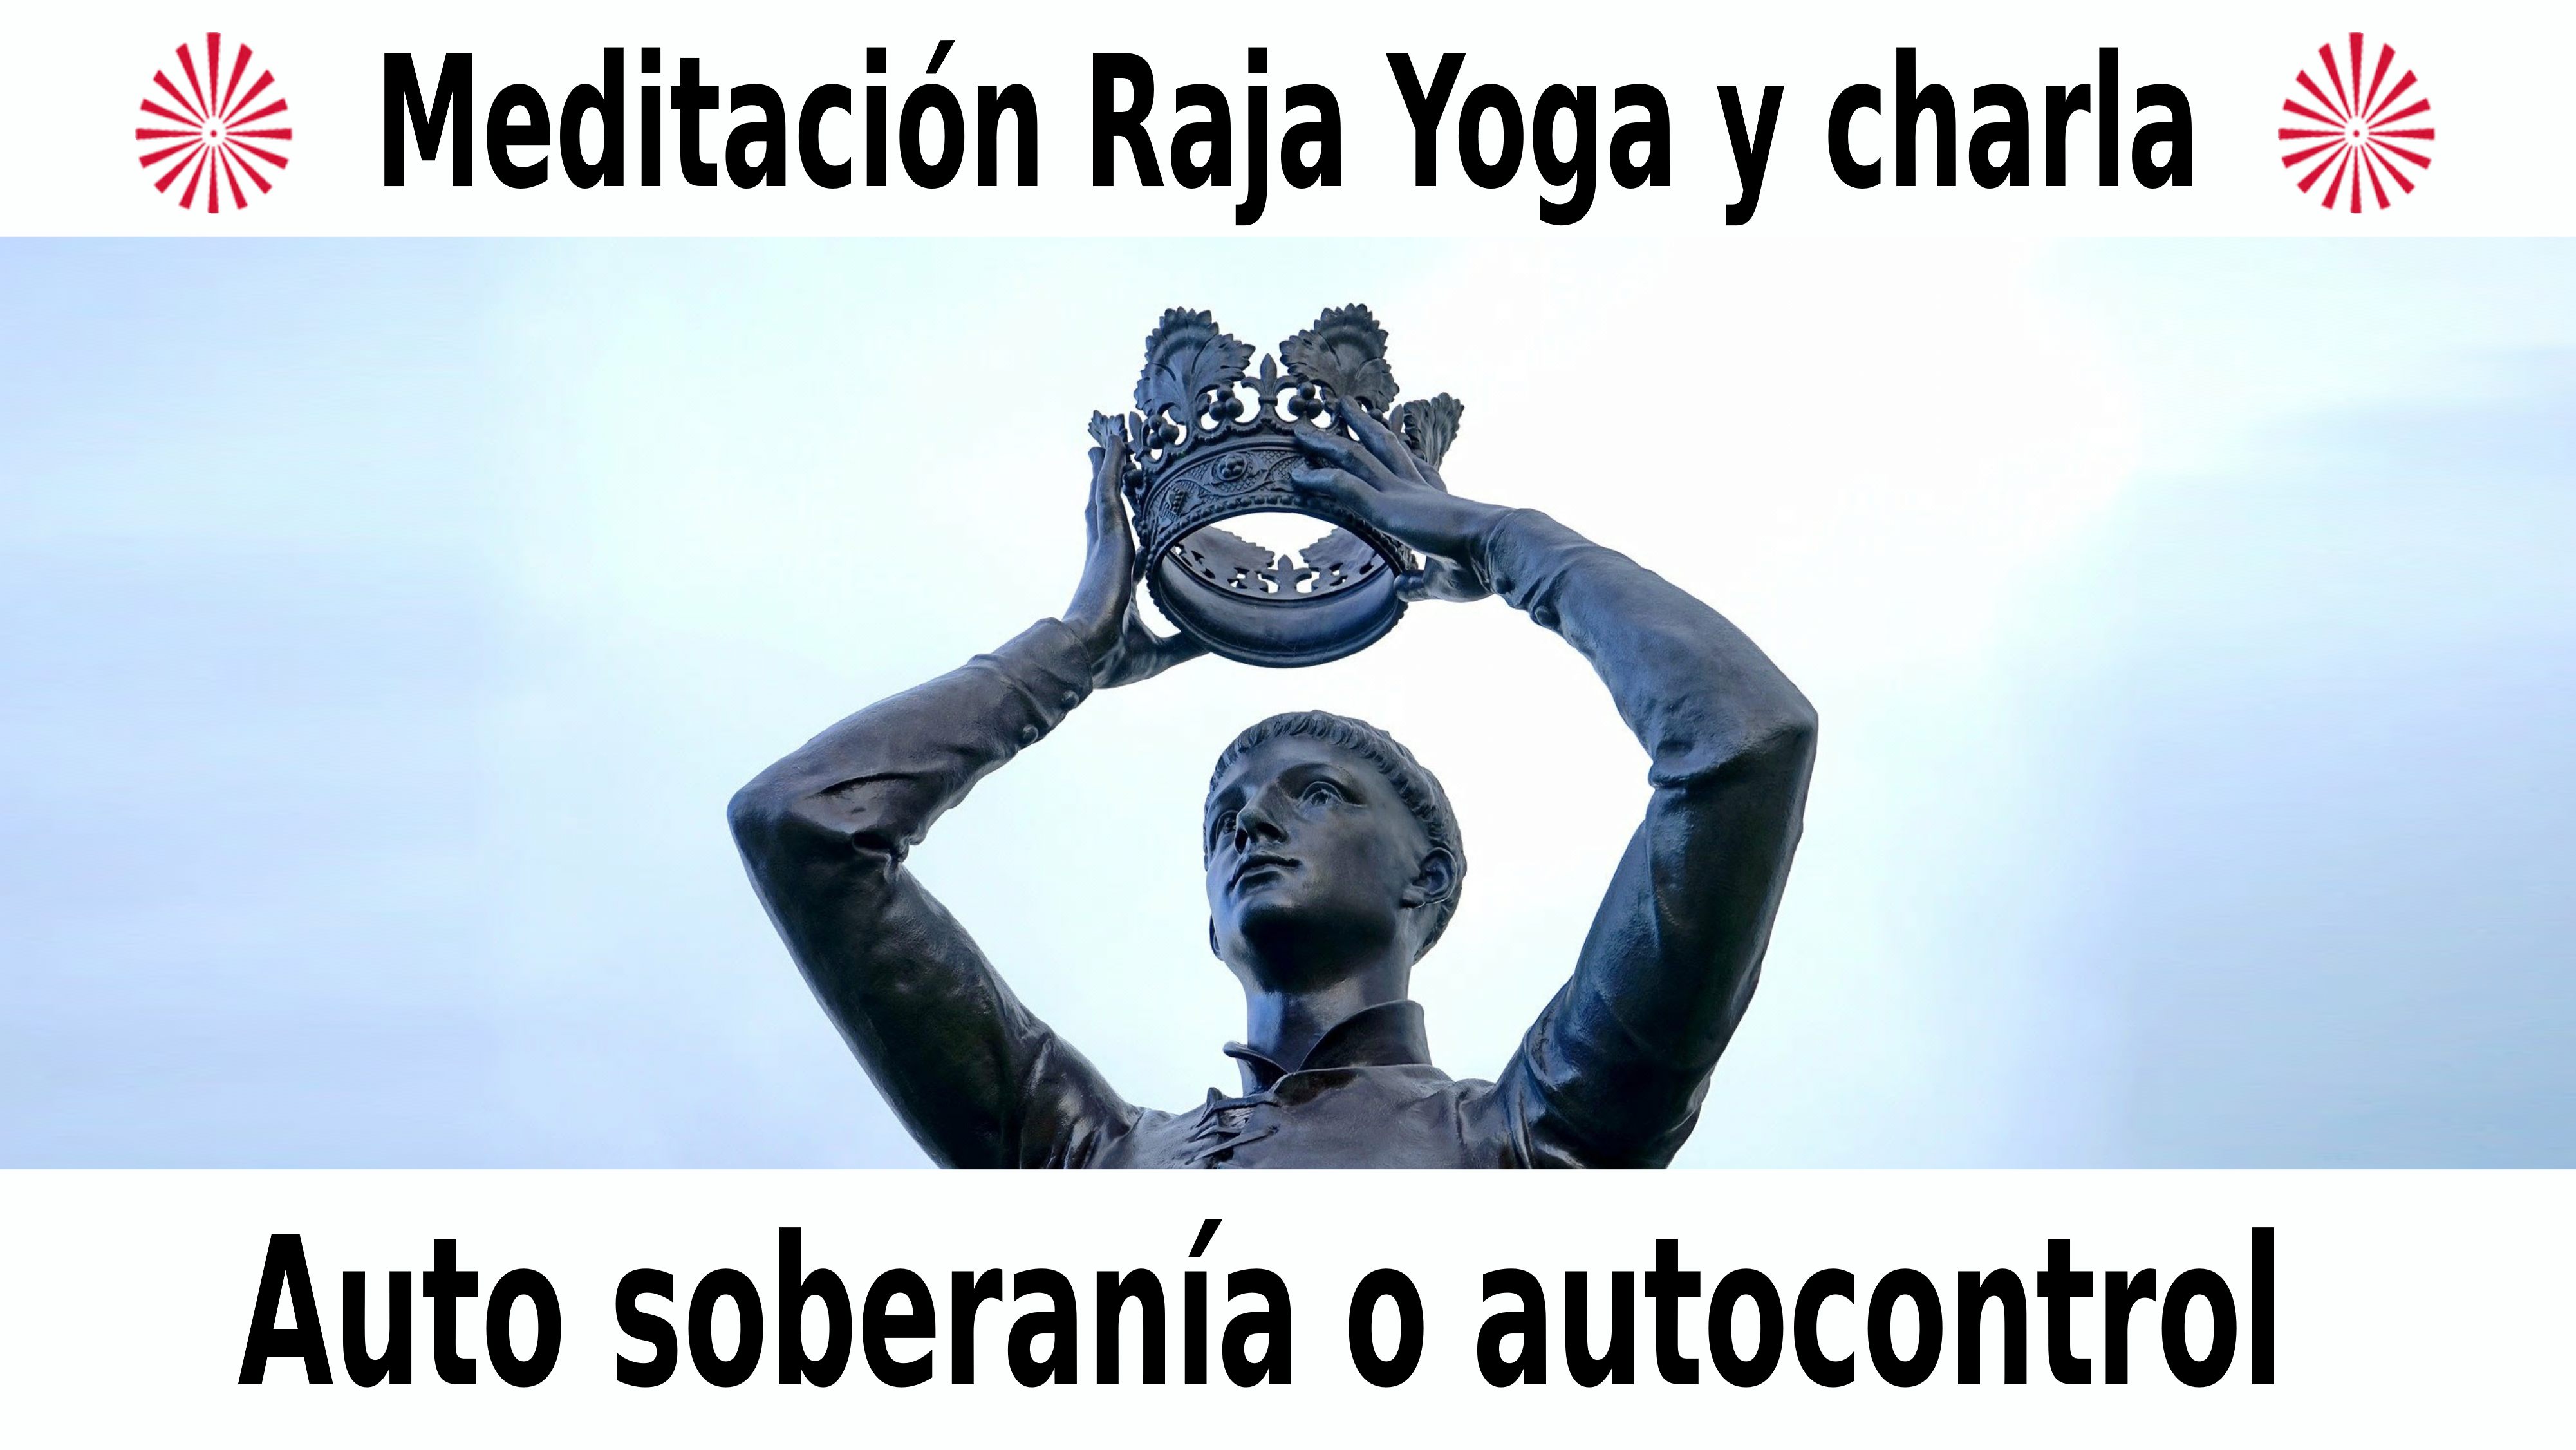 Meditación Raja Yoga y charla: Auto soberanía o autocontrol (6 Diciembre 2020) On-line desde Valencia